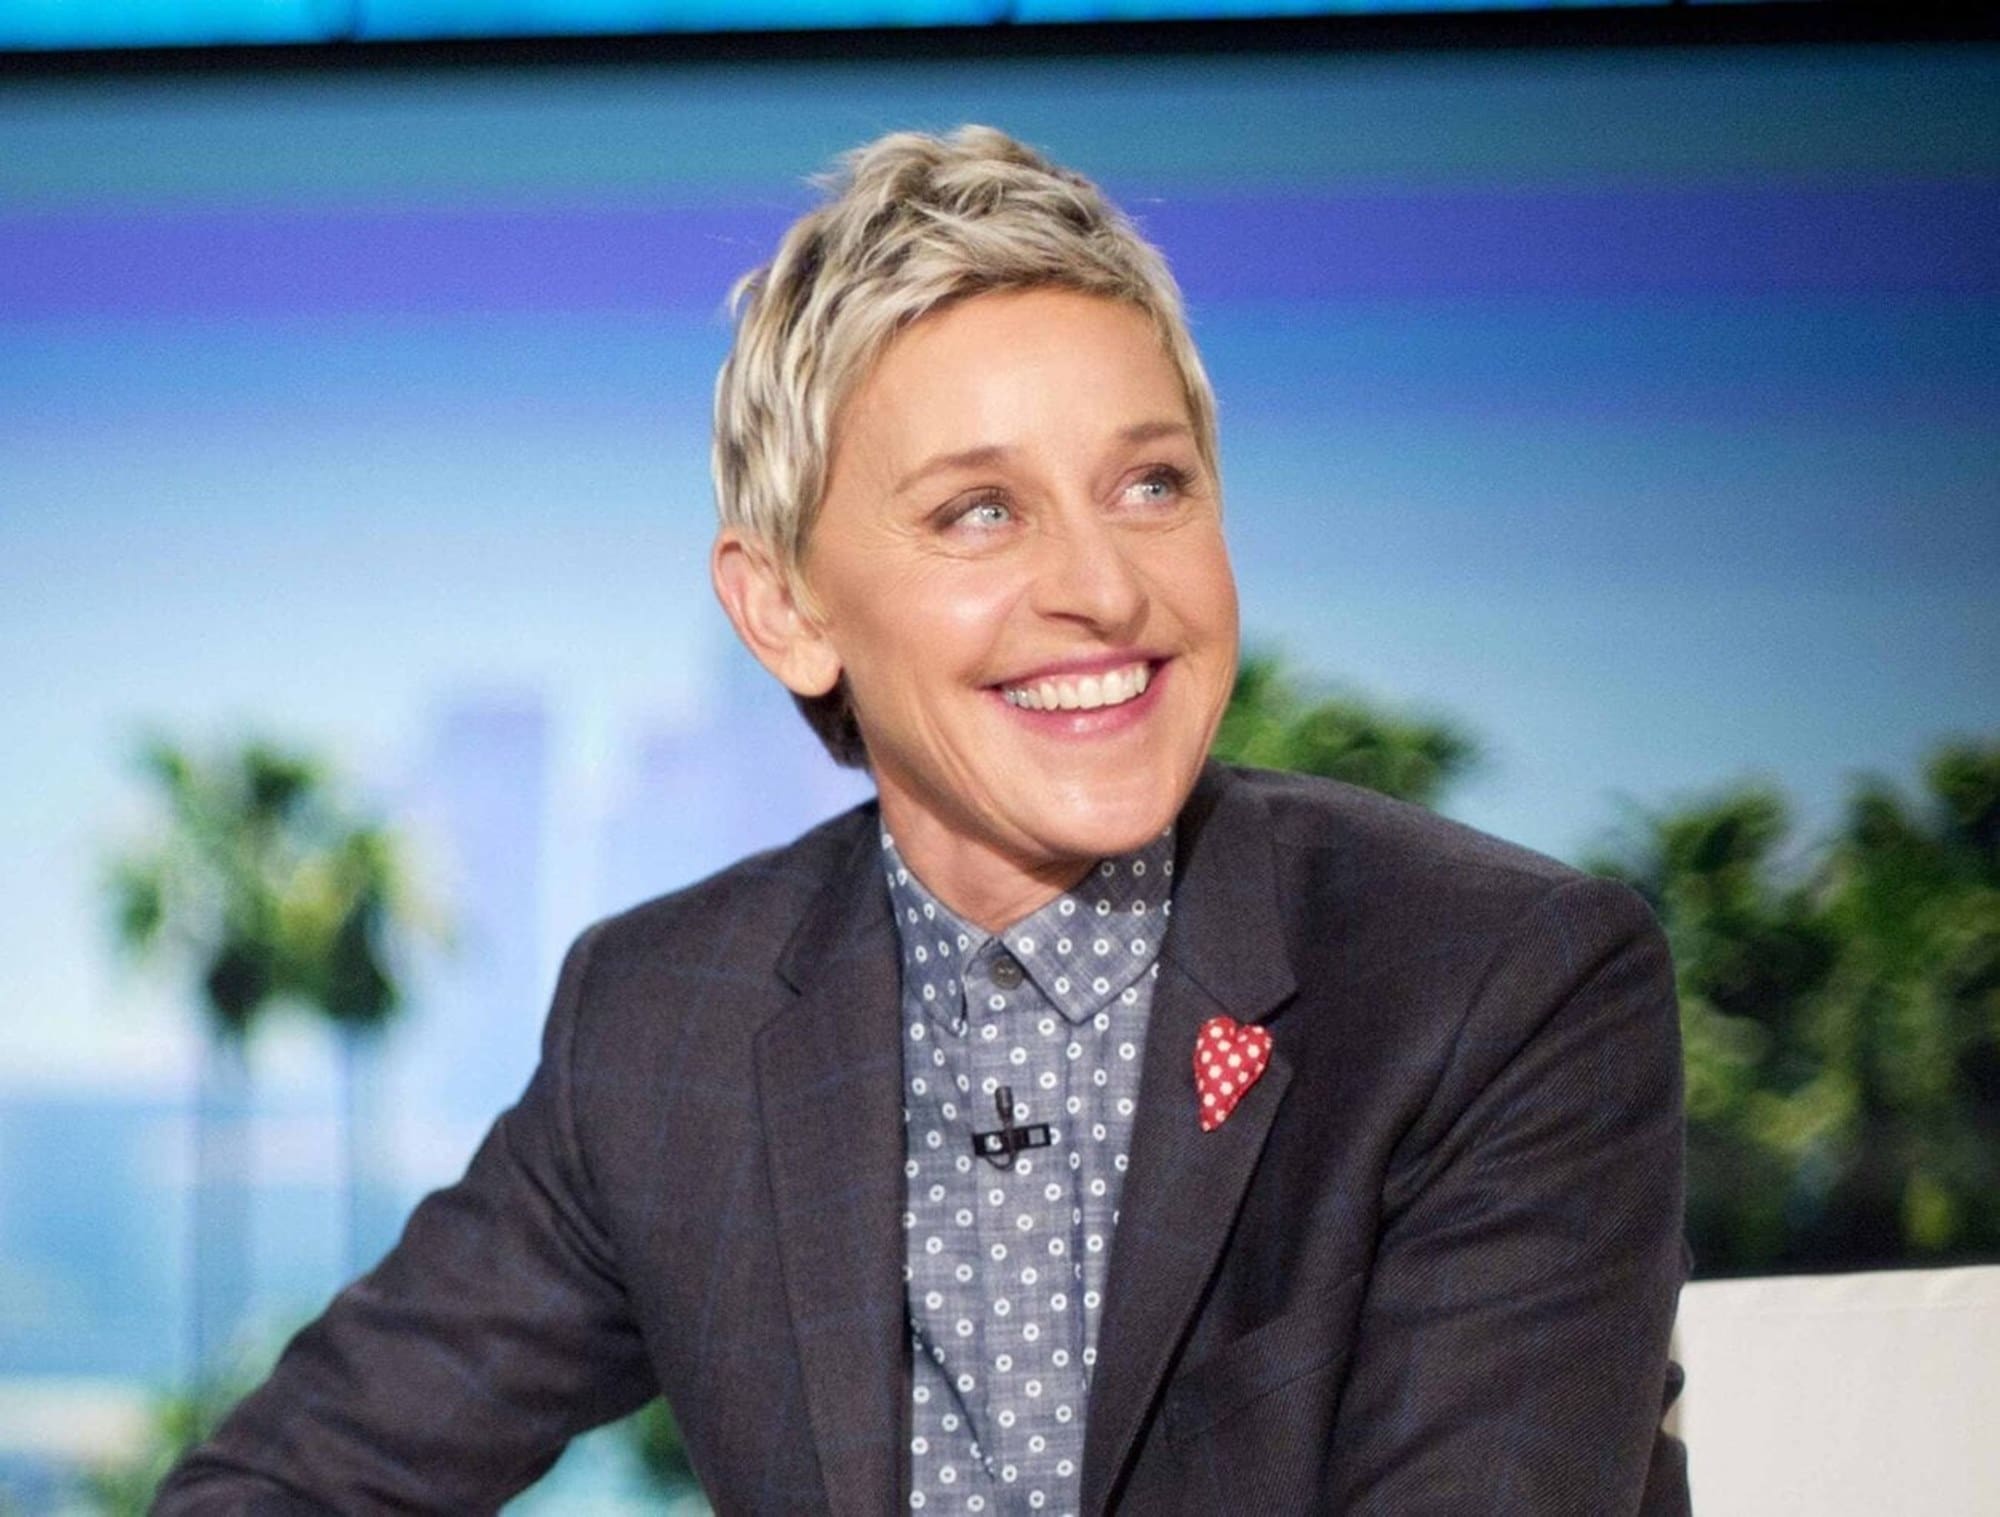 Ellen DeGeneres James Corden Show If She Leaves